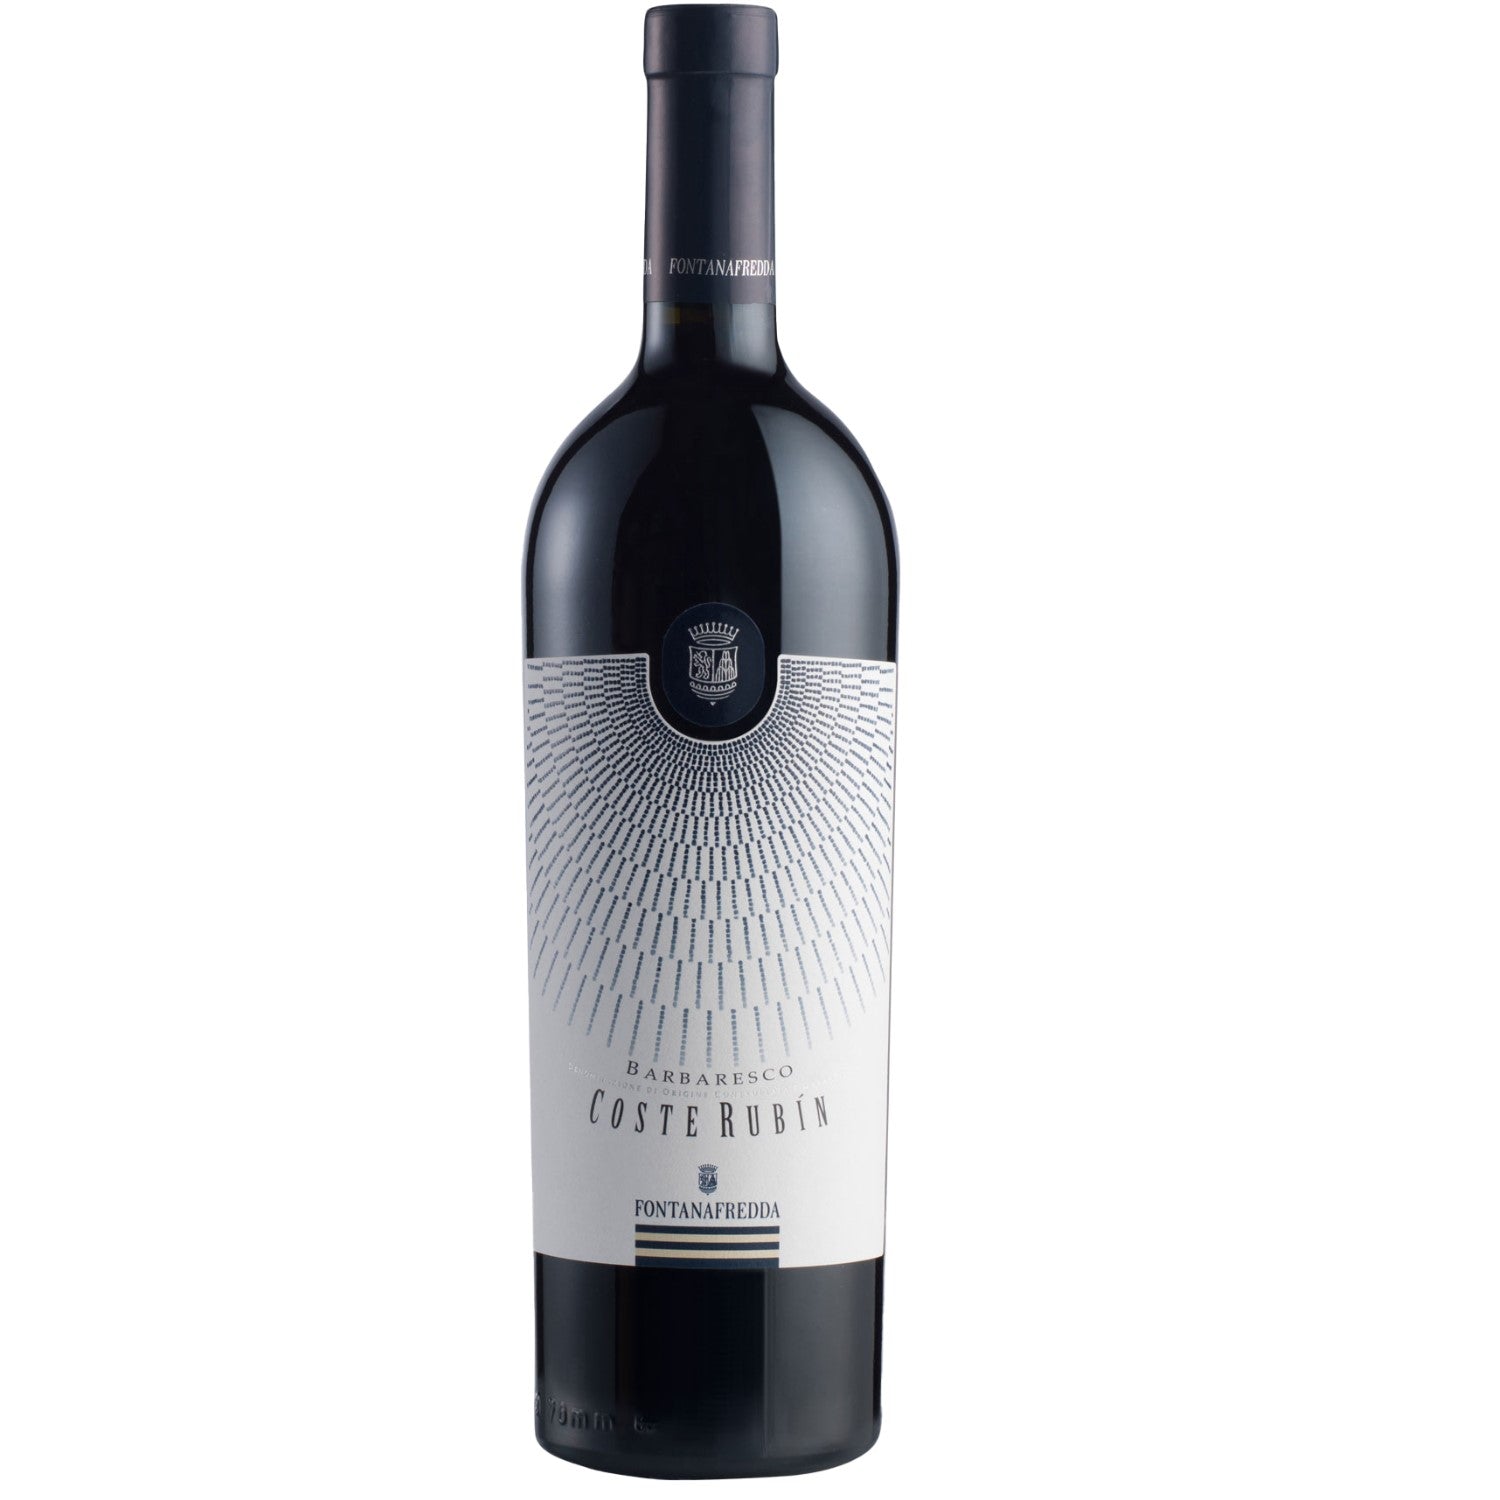 Fontanafredda Coste Rubin Barbaresco DOCG Rotwein Wein trocken Italien (6 x 0.75l) - Versanel -